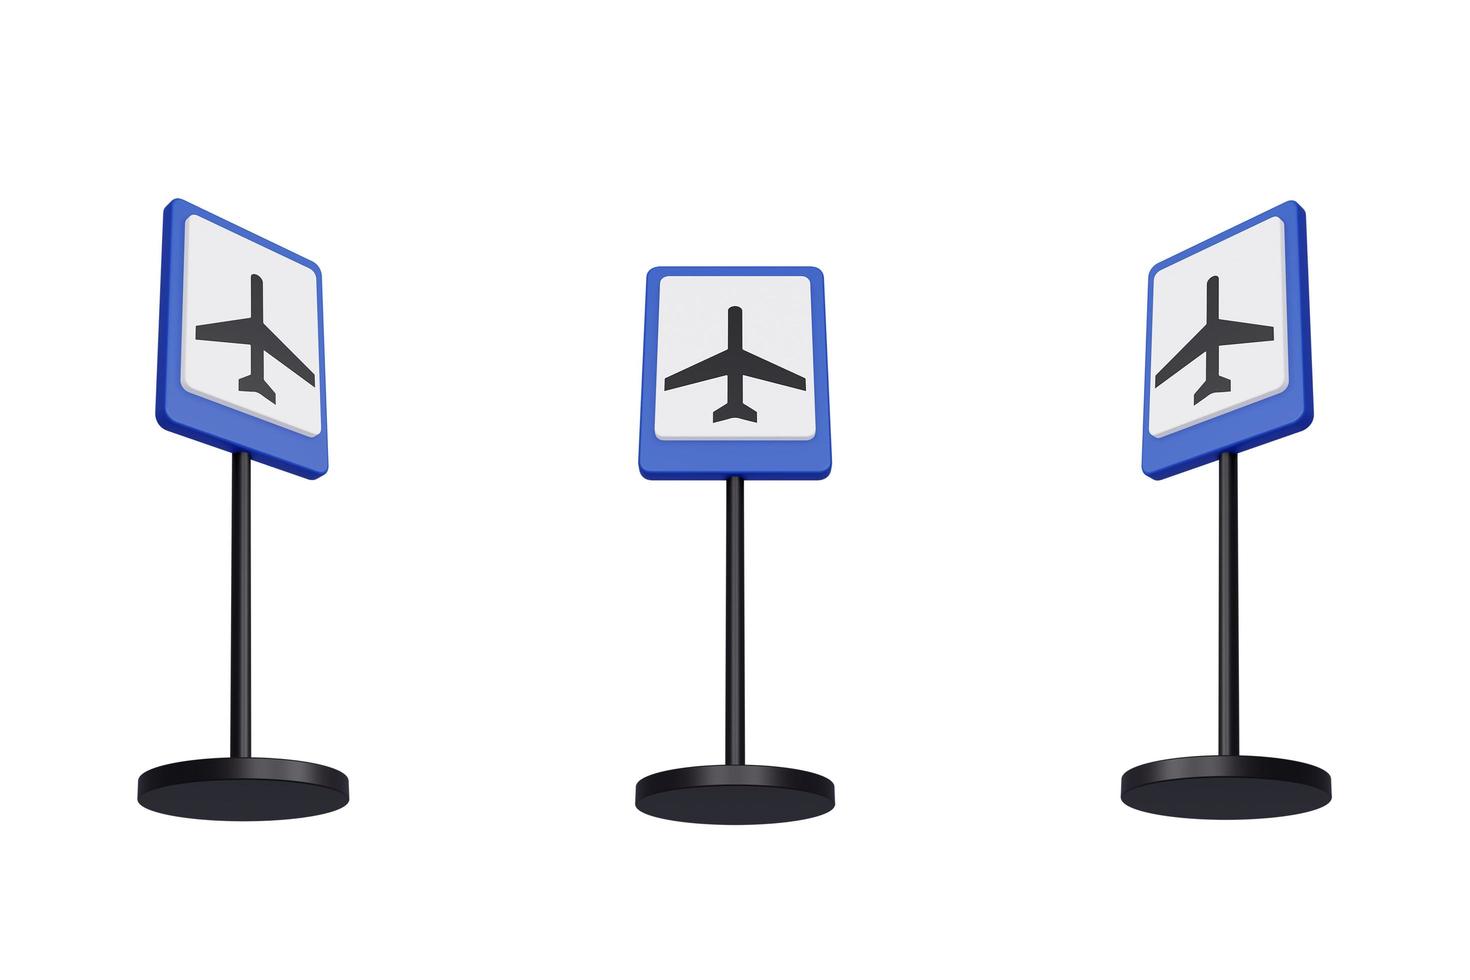 Rendu 3d illustration des panneaux de signalisation de l'aéroport photo